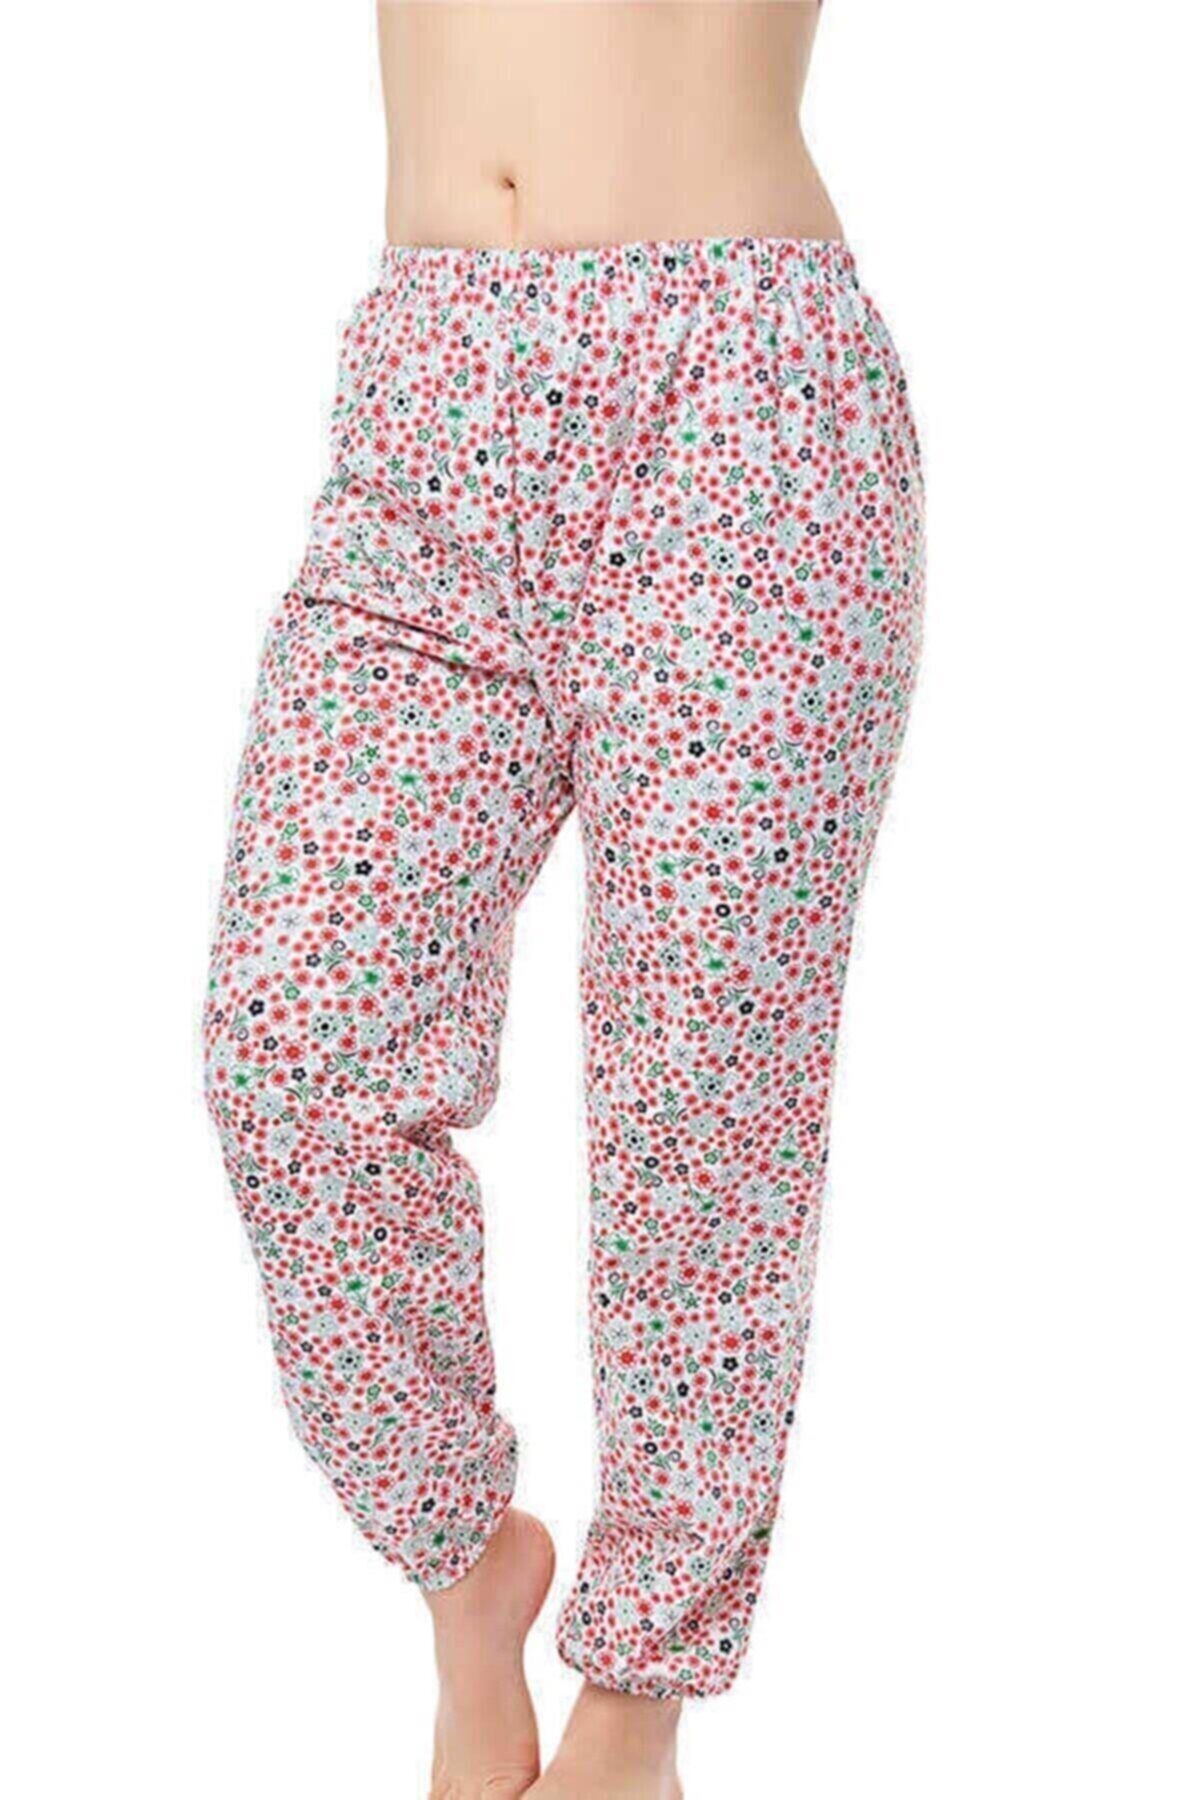 Seher Kadın Uzun Tek Alt Pijama Çiçek Desenli Kışlık Battal Boy - 6 Adet